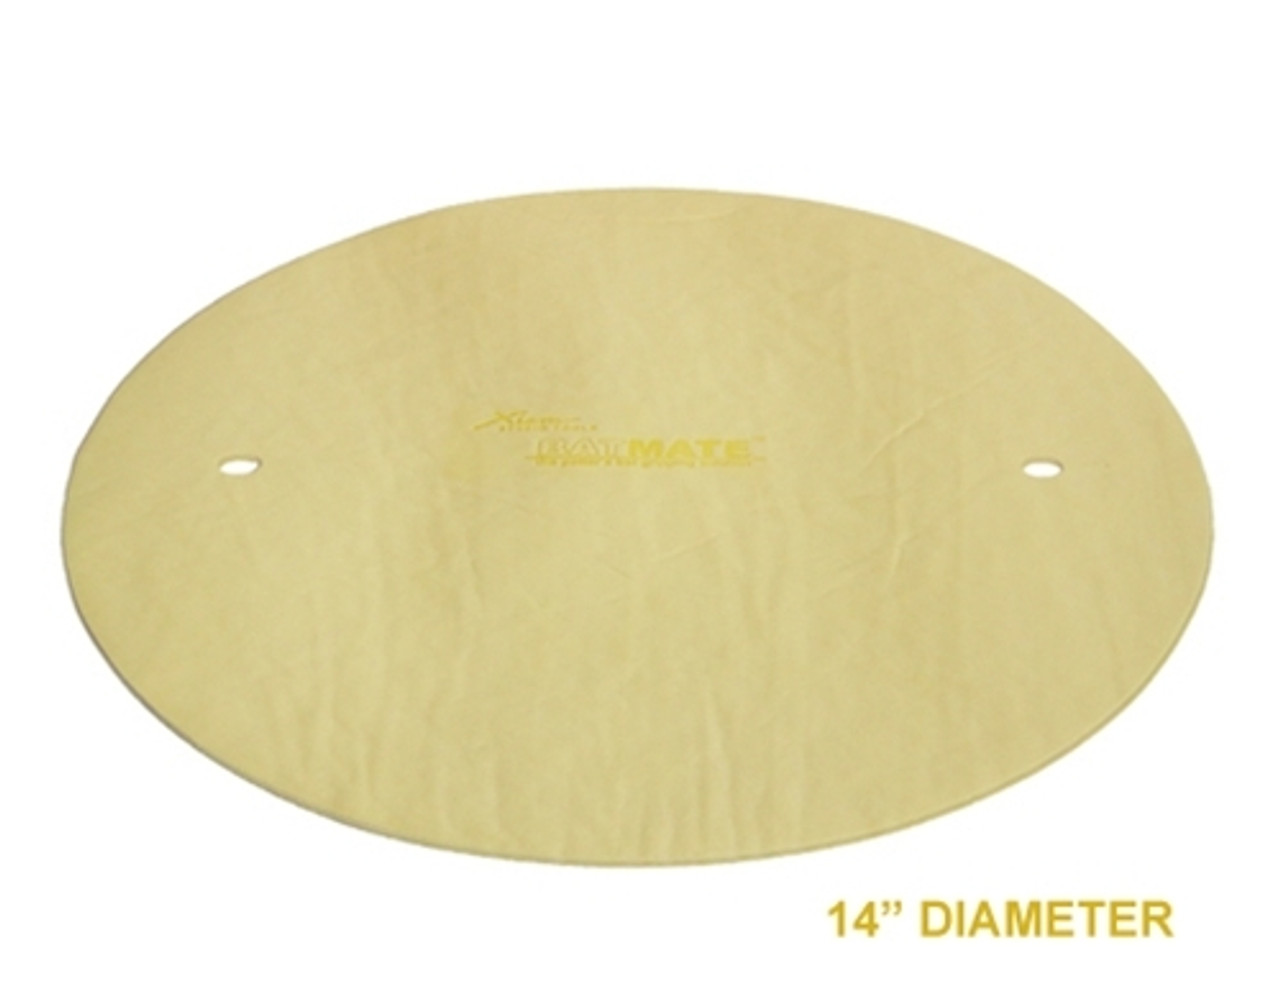 14" Diameter BatMate